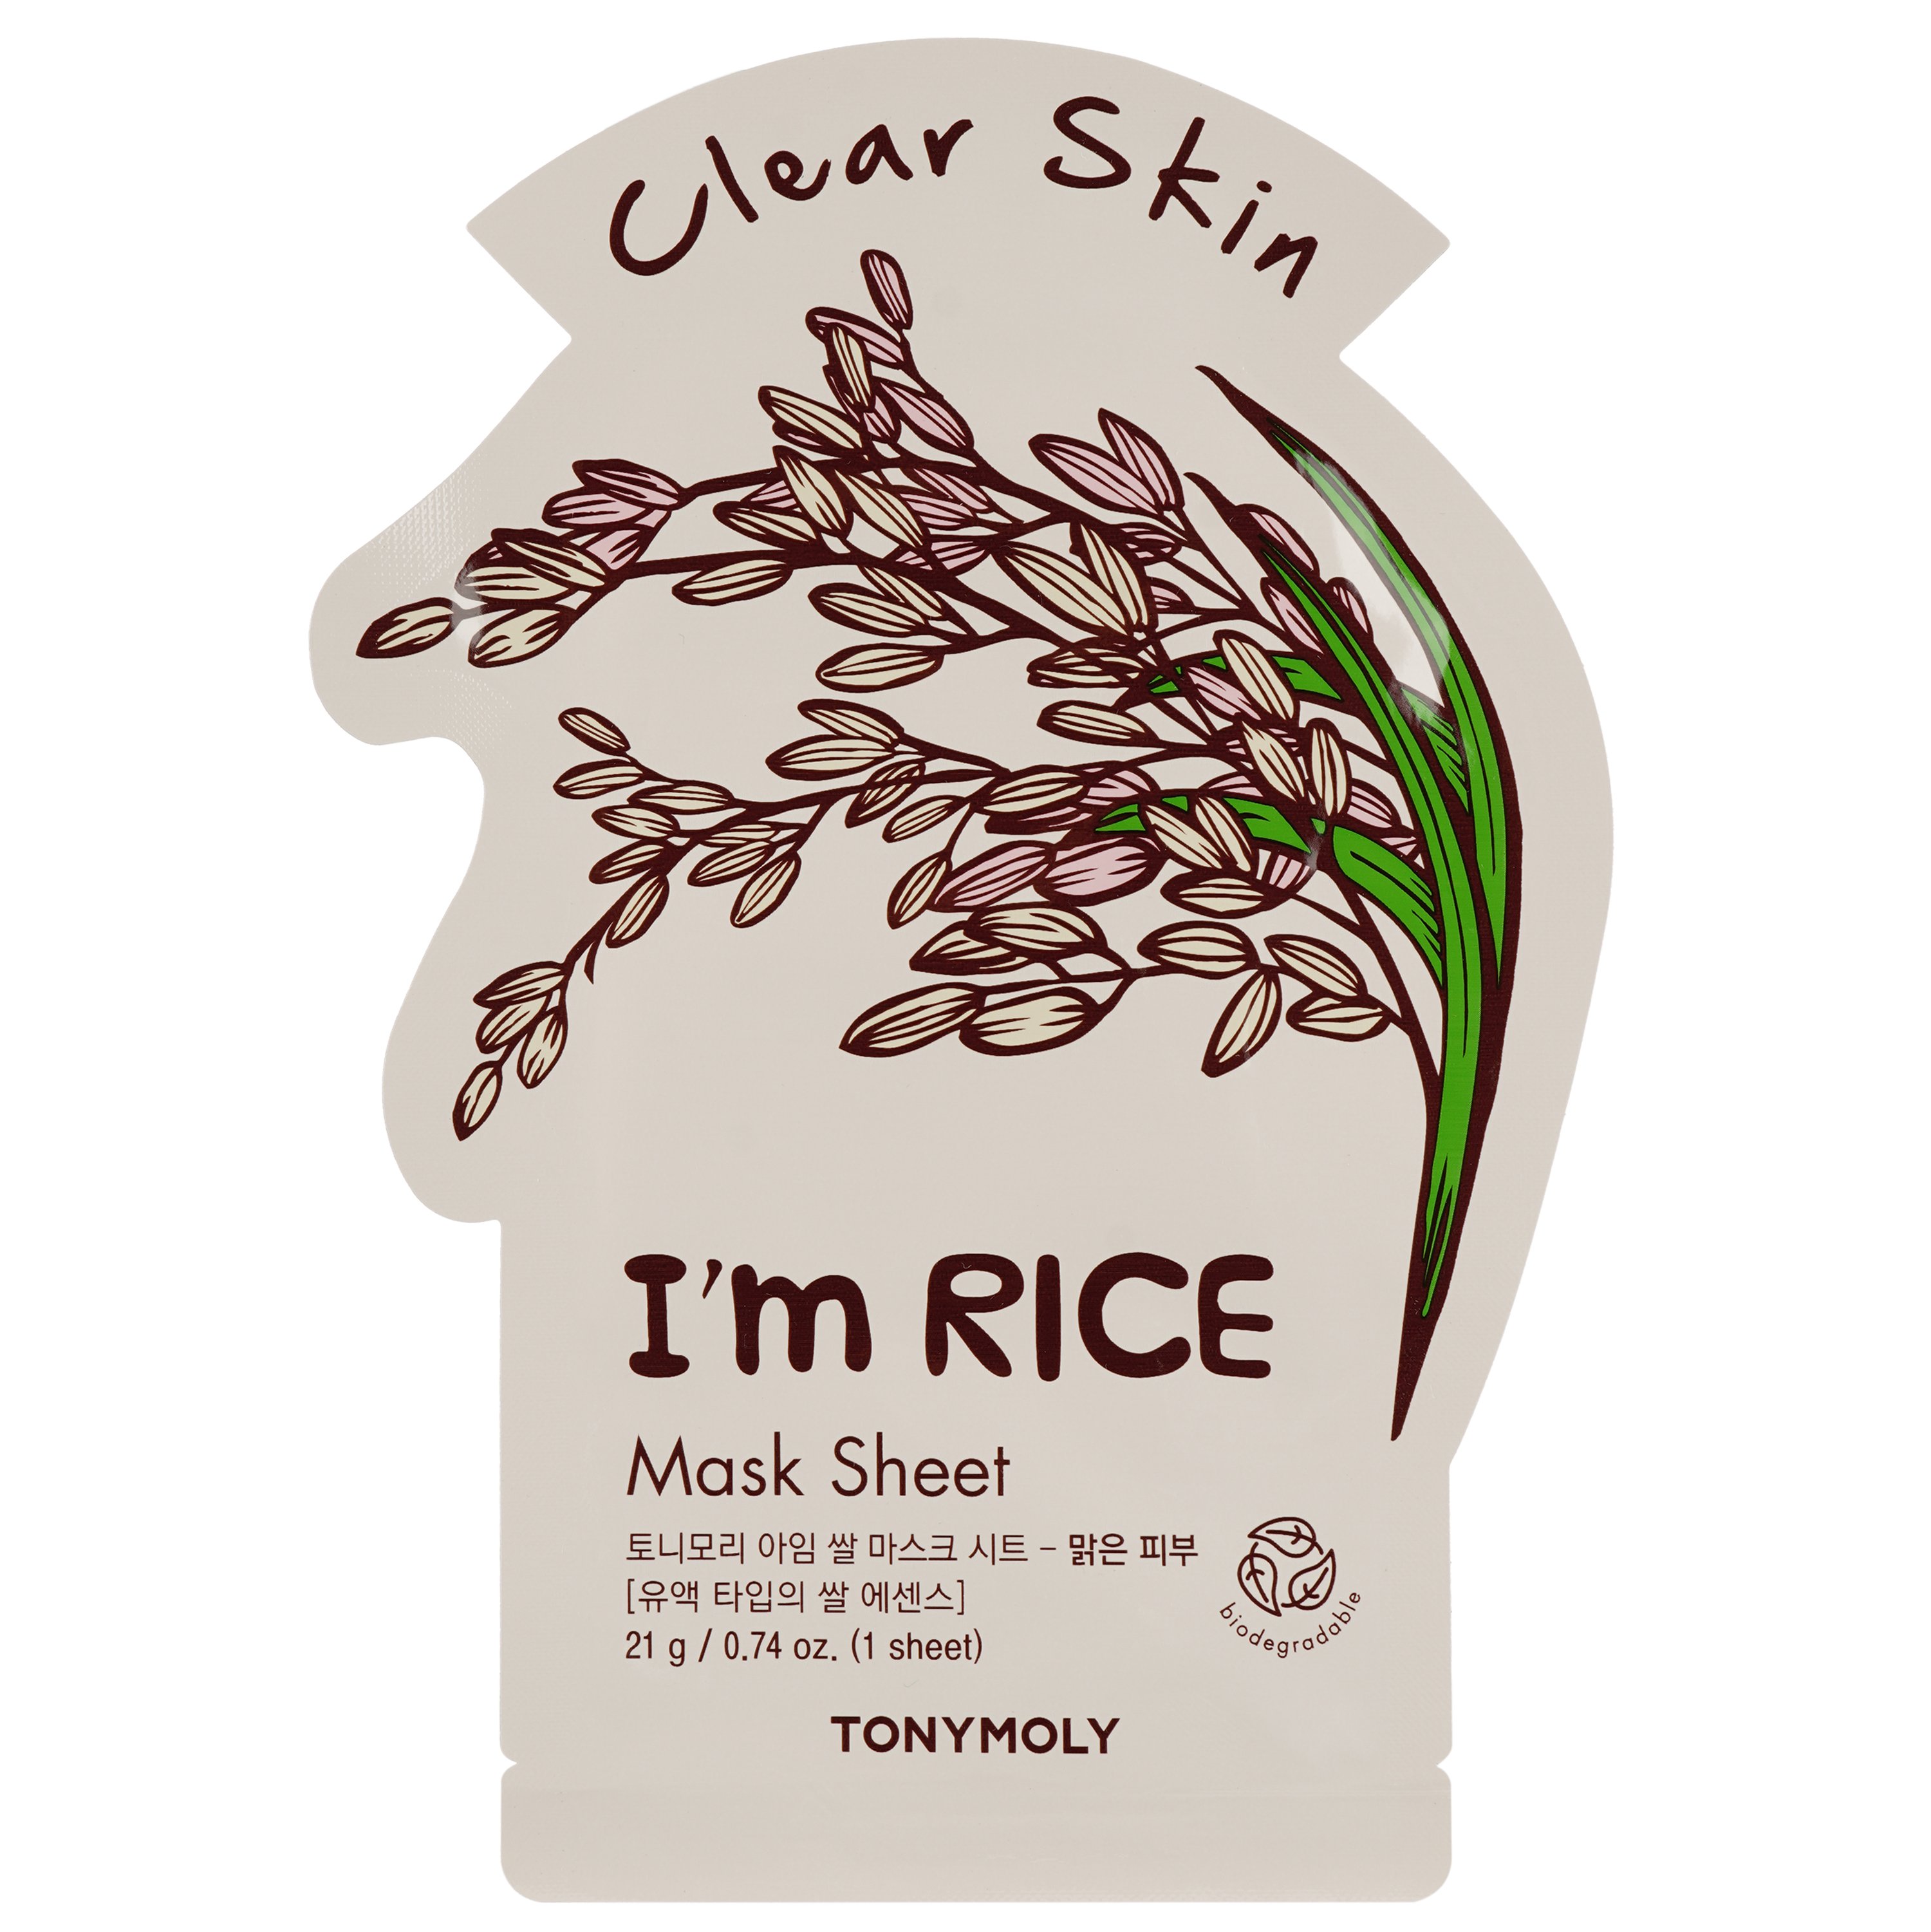 Маска тканевая для лица Tony Moly I'm Rice Mask Sheet Brightening Рис, 21 мл - фото 1